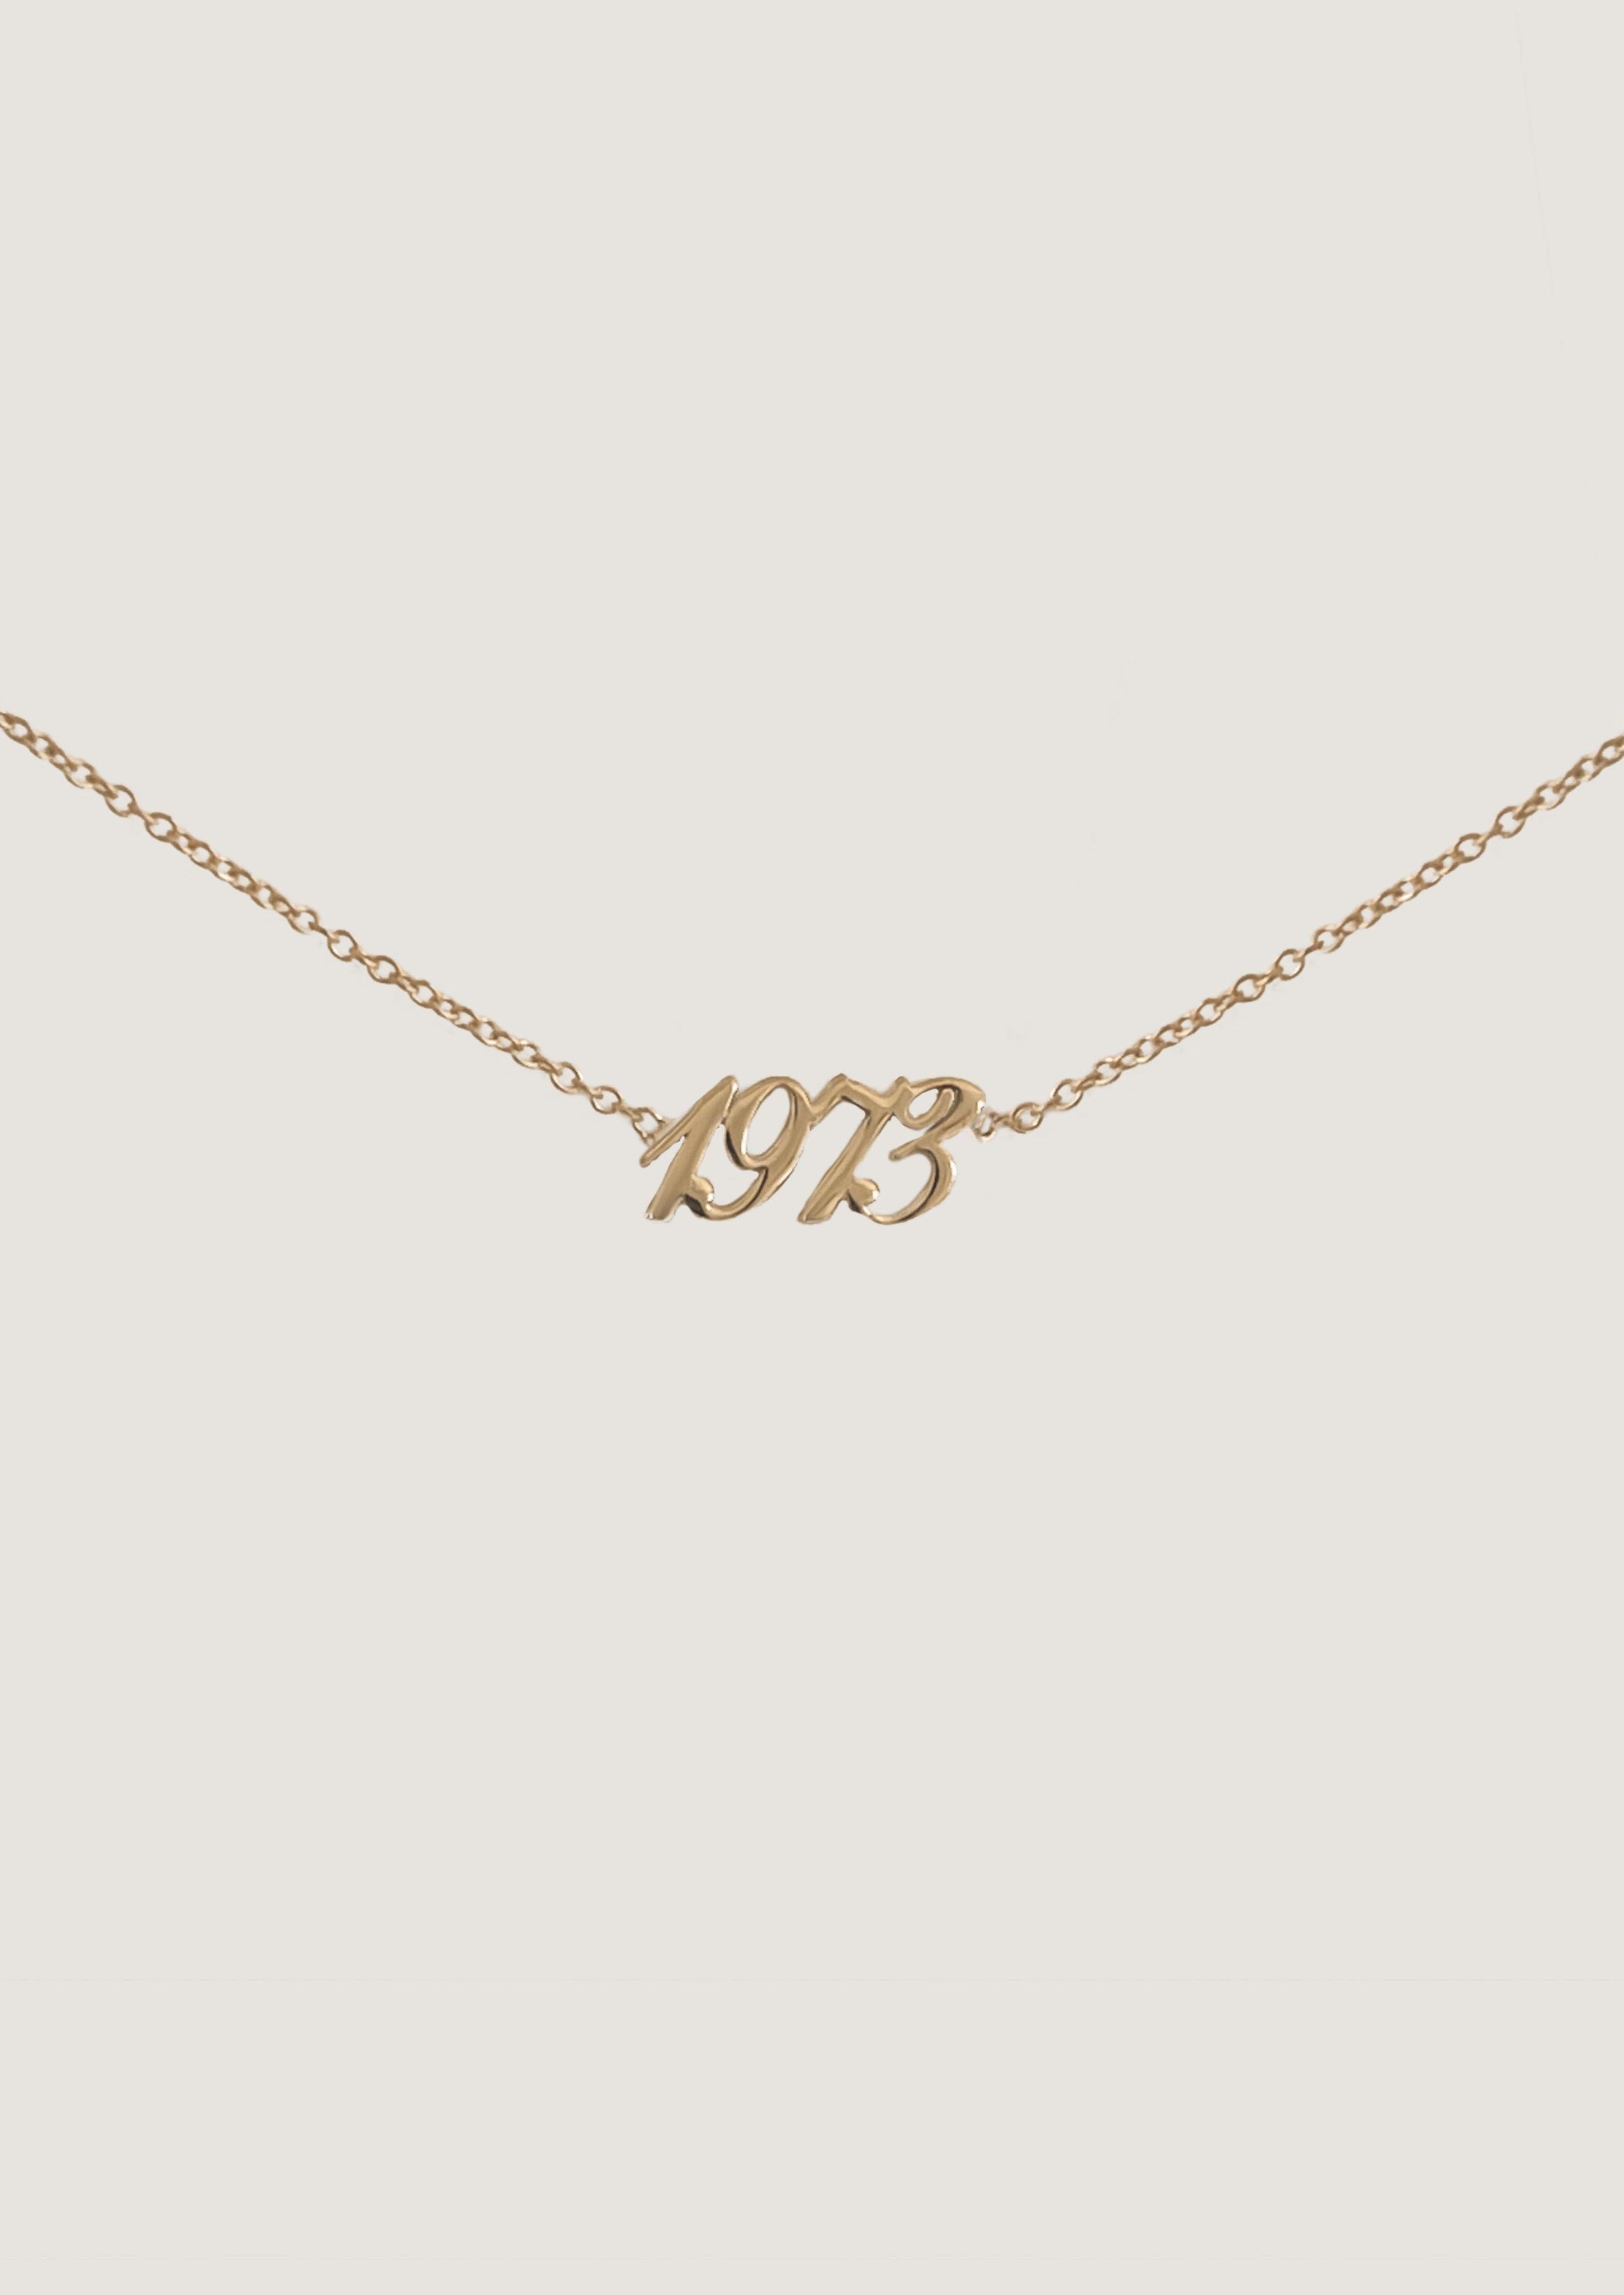 alt="1973 14K gold necklace"